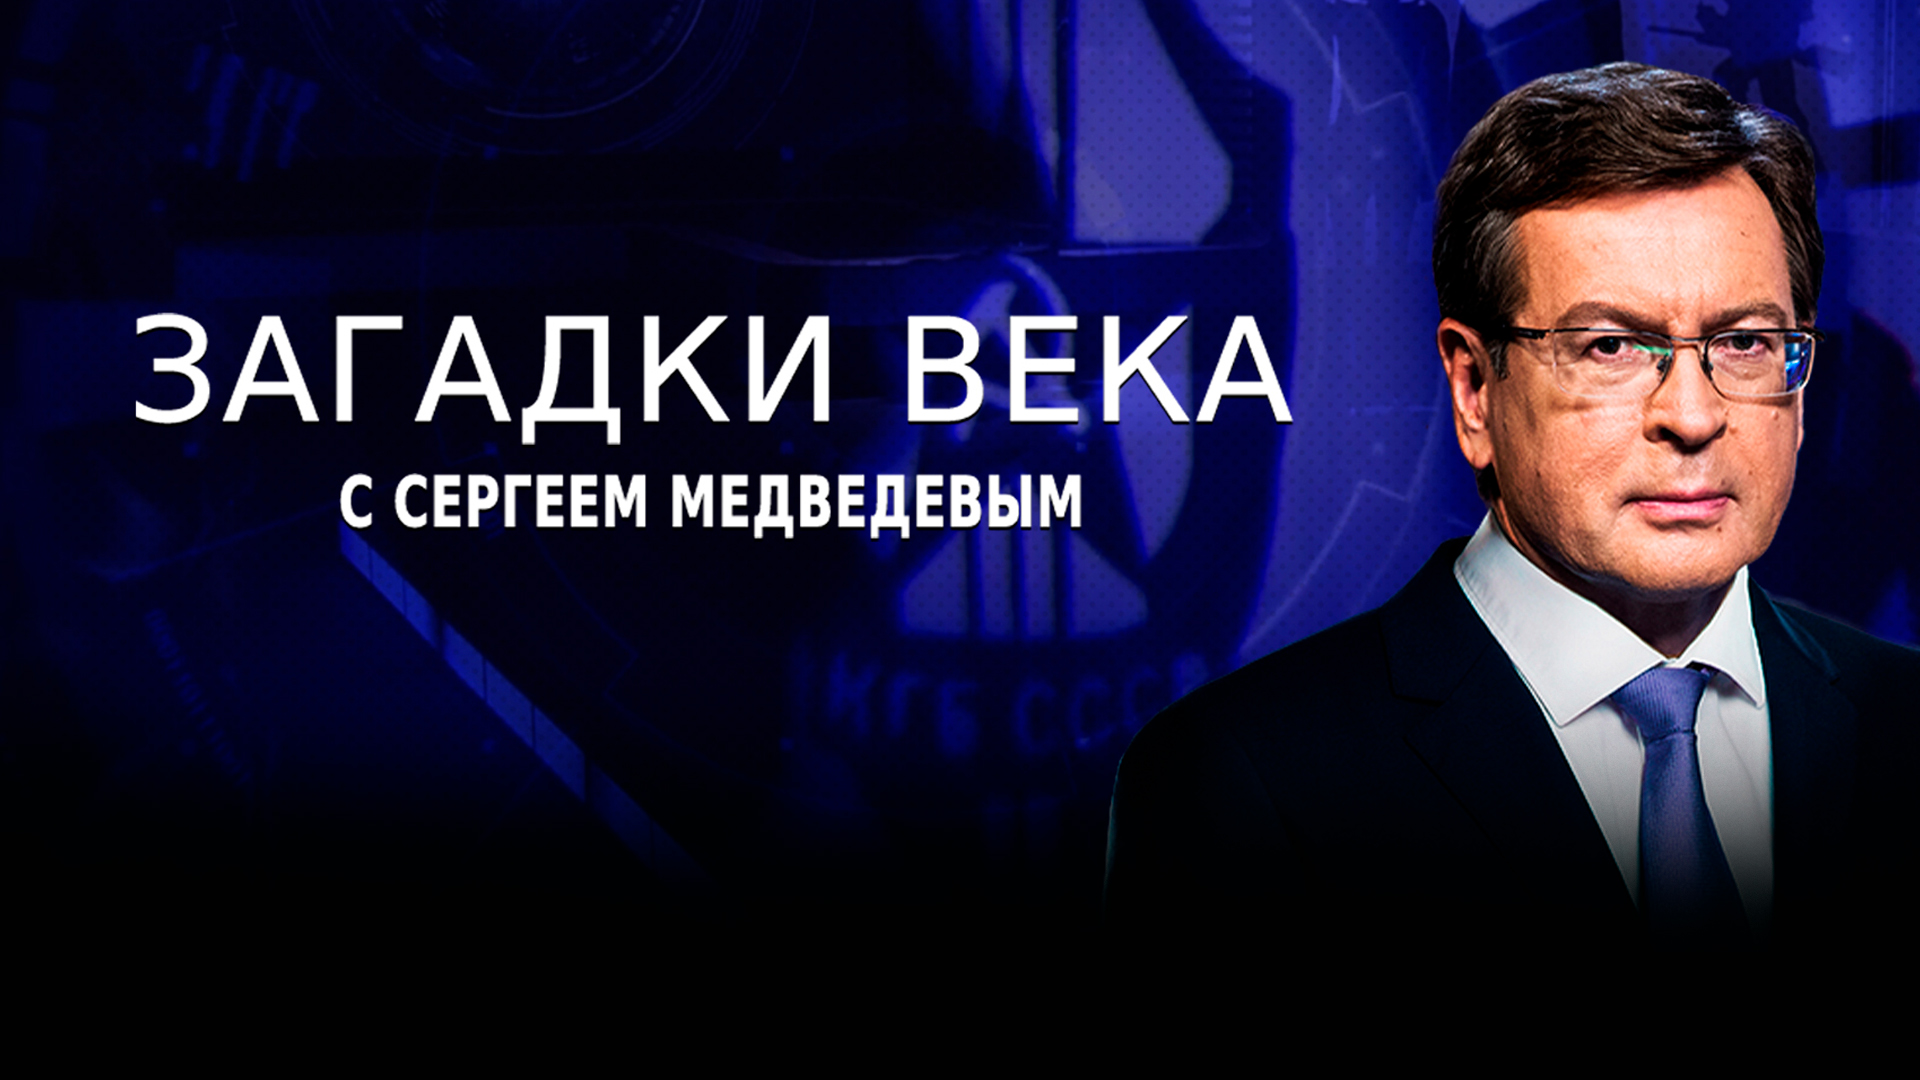 «Загадки века» с Сергеем Медведевым